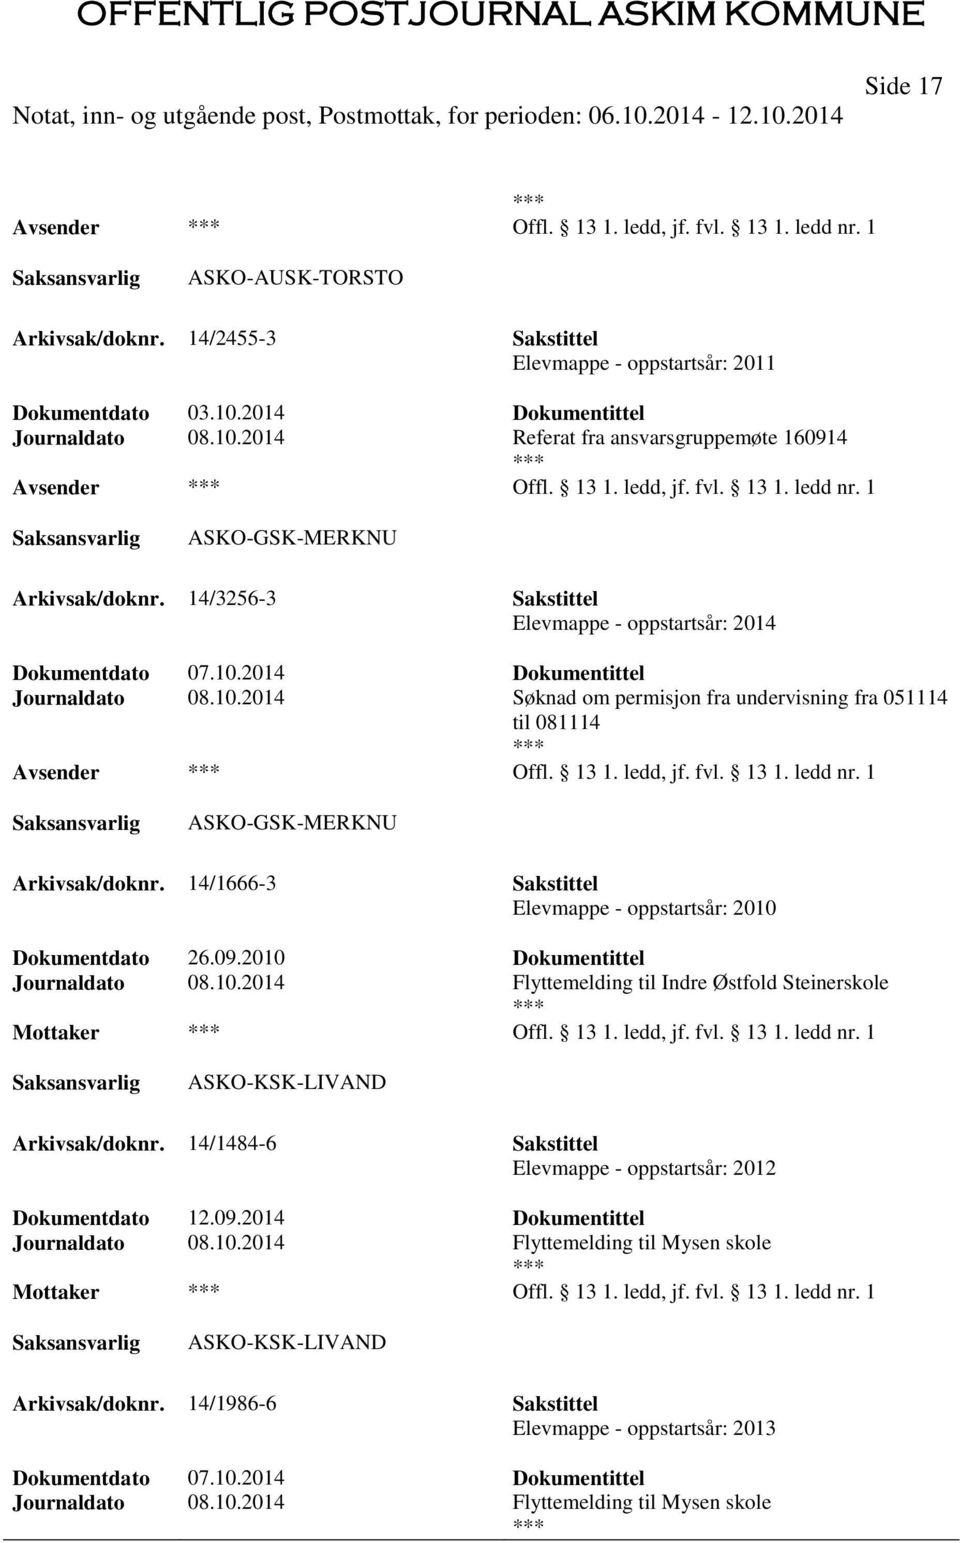 2014 Dokumentittel Journaldato 08.10.2014 Søknad om permisjon fra undervisning fra 051114 til 081114 Offl. 13 1. ledd, jf. fvl. 13 1. ledd nr. 1 ASKO-GSK-MERKNU Arkivsak/doknr.